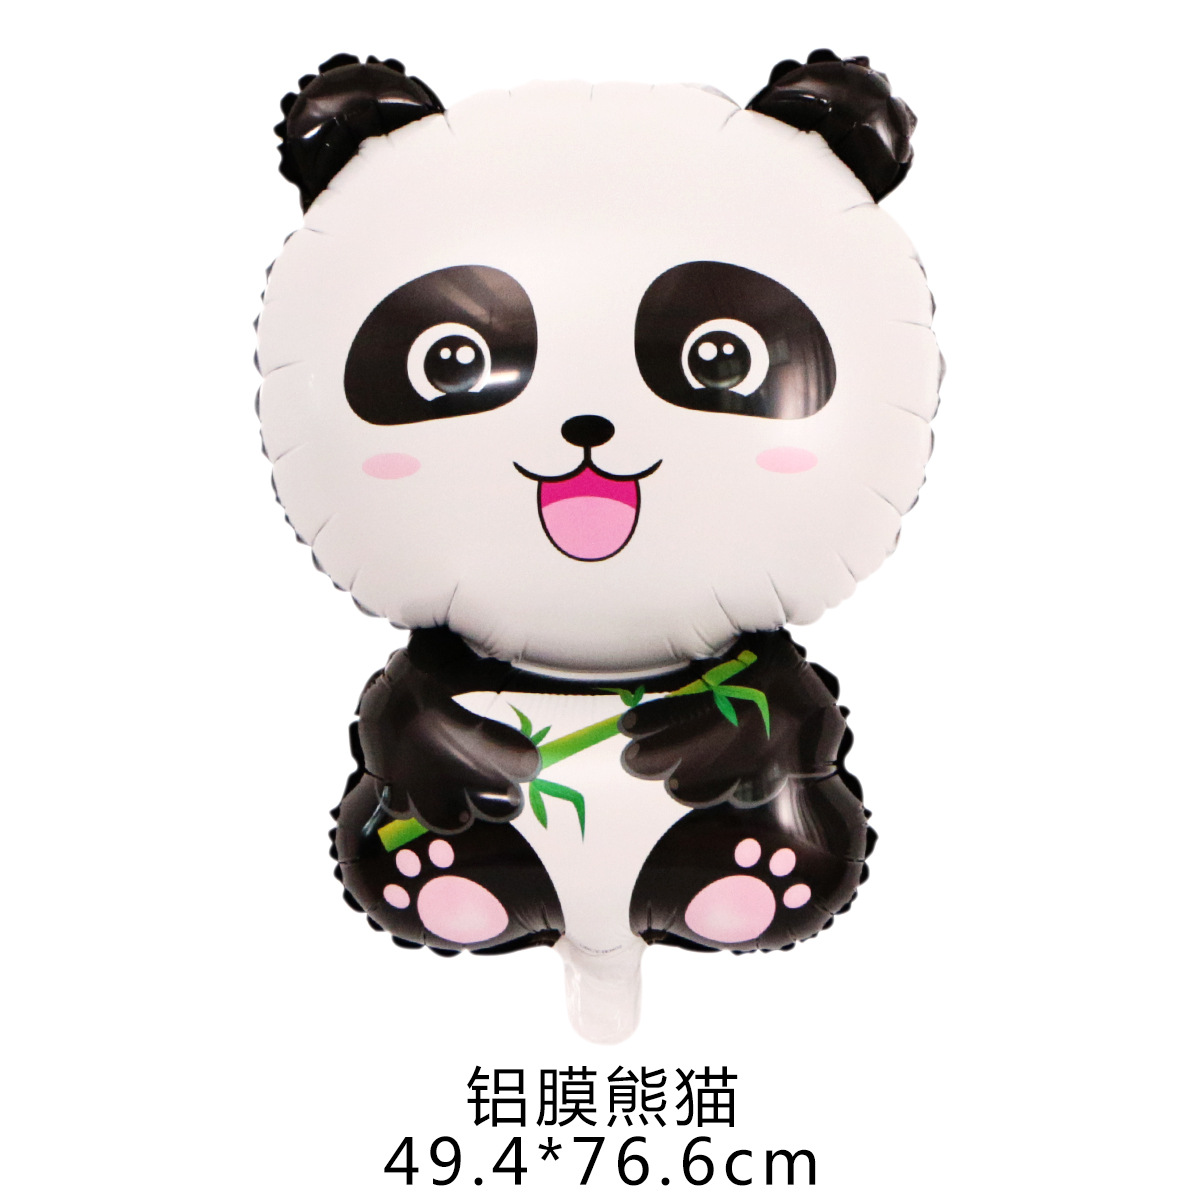 新款黑白色熊猫系列气球 组合panda balloon乳胶熊猫套装升空气球 - 图2